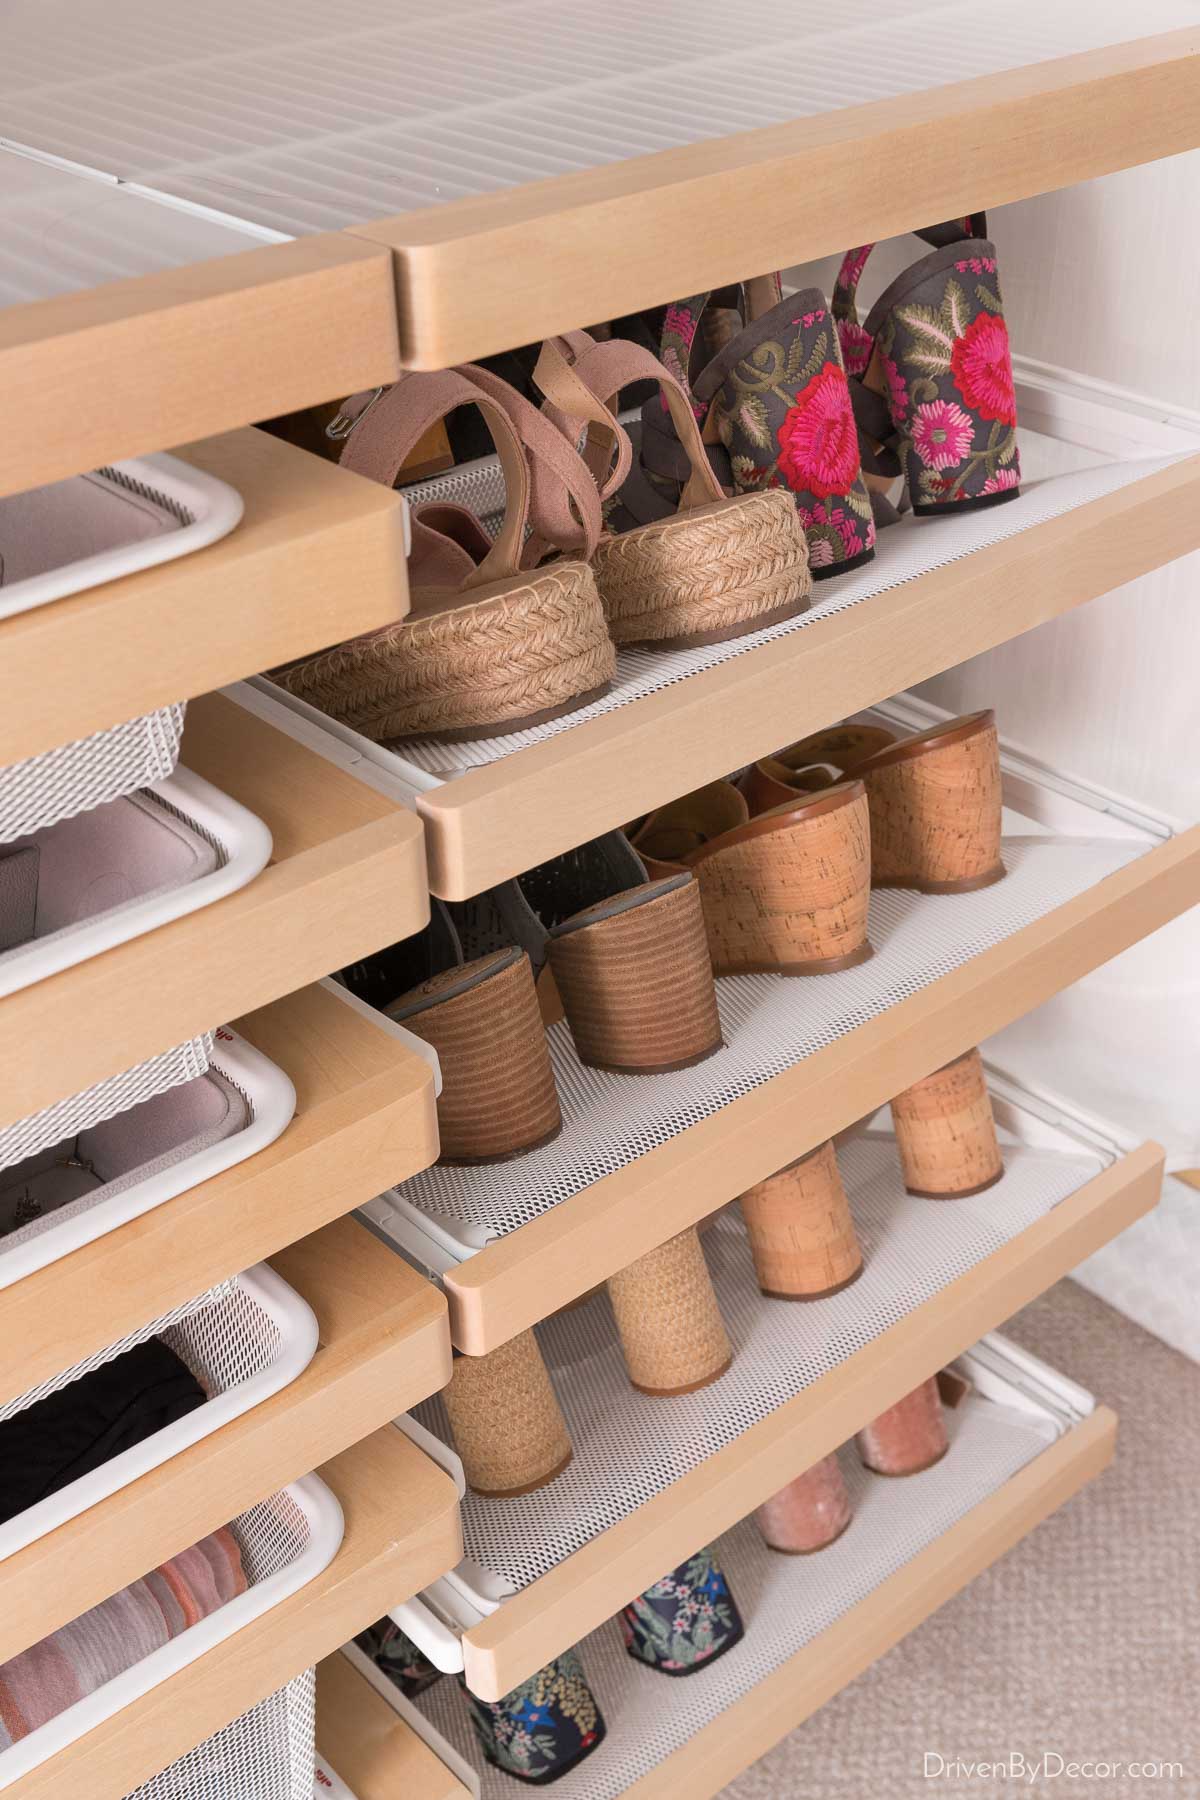 The Elfa closet system's gliding shoe shelves